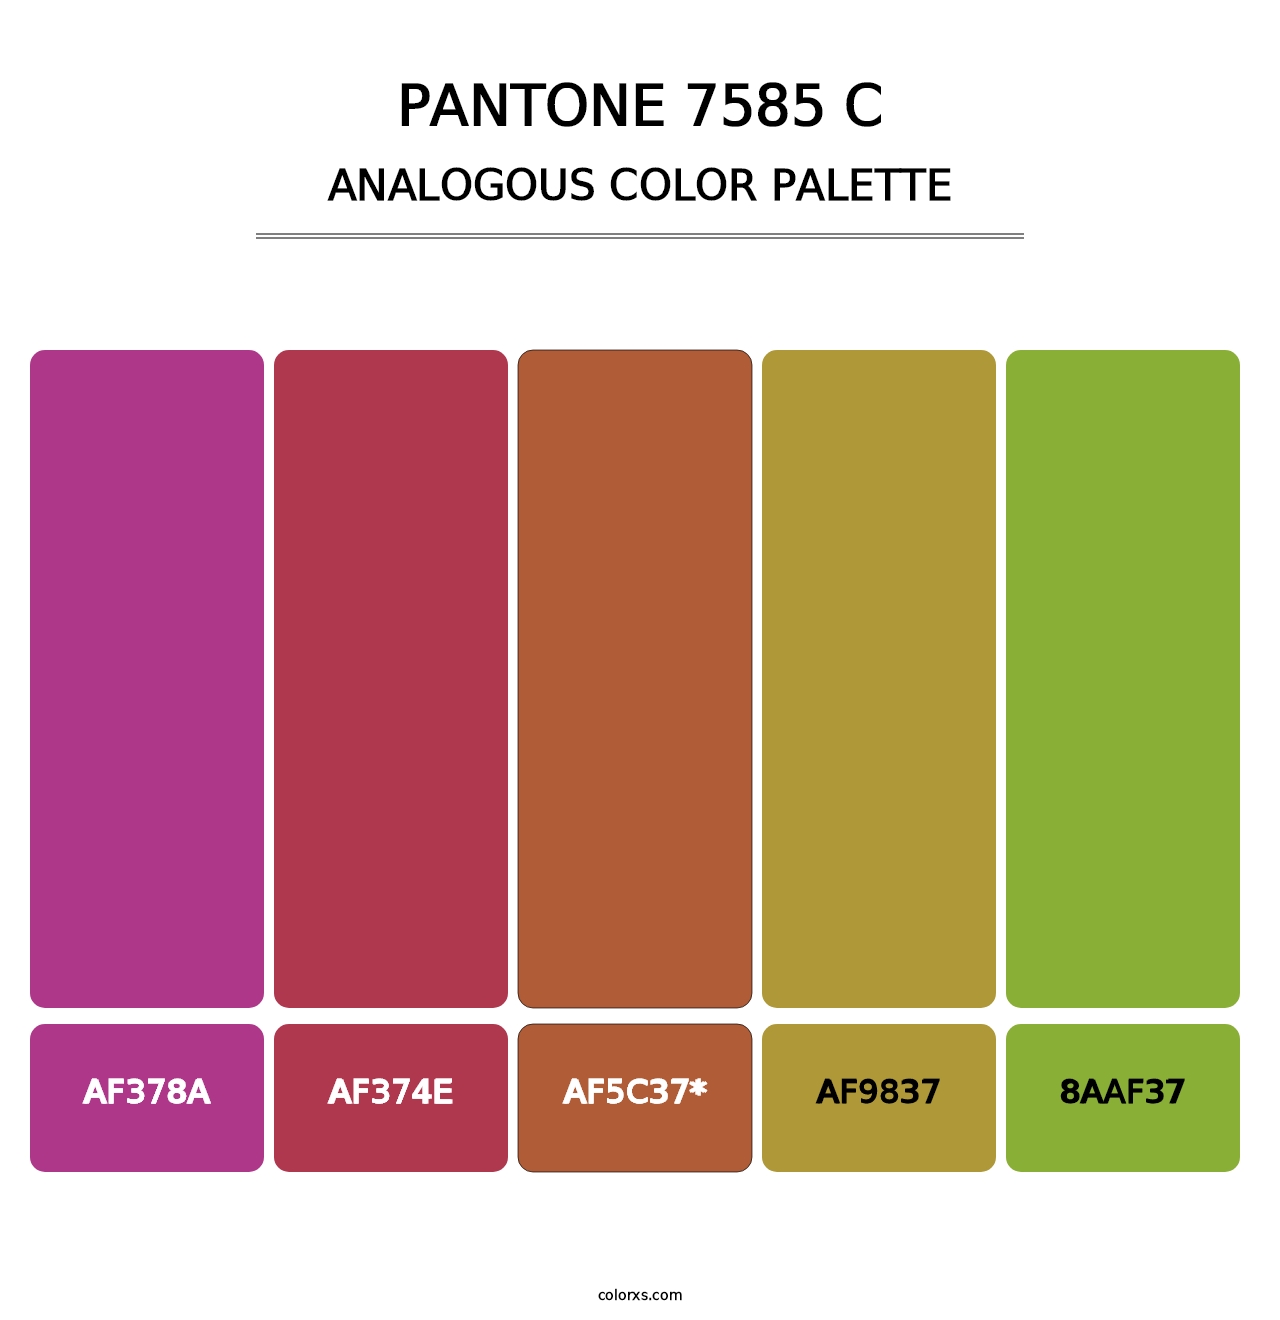 PANTONE 7585 C - Analogous Color Palette